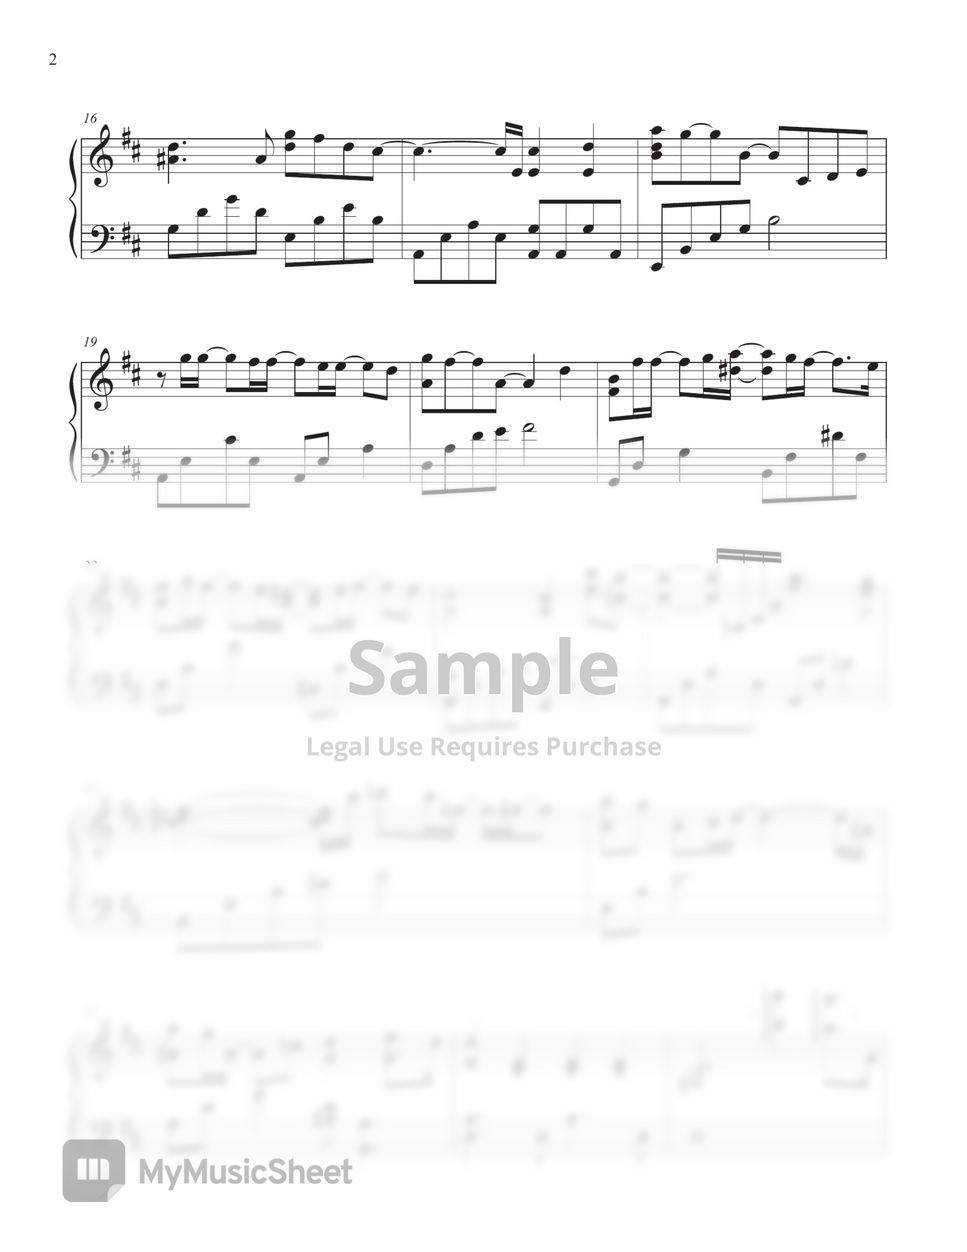 제휘 - Jung Seung Hwan(정승환) _ My christmas wish(십이월 이십오일의 고백) (Easy key D Major) by Tully Piano